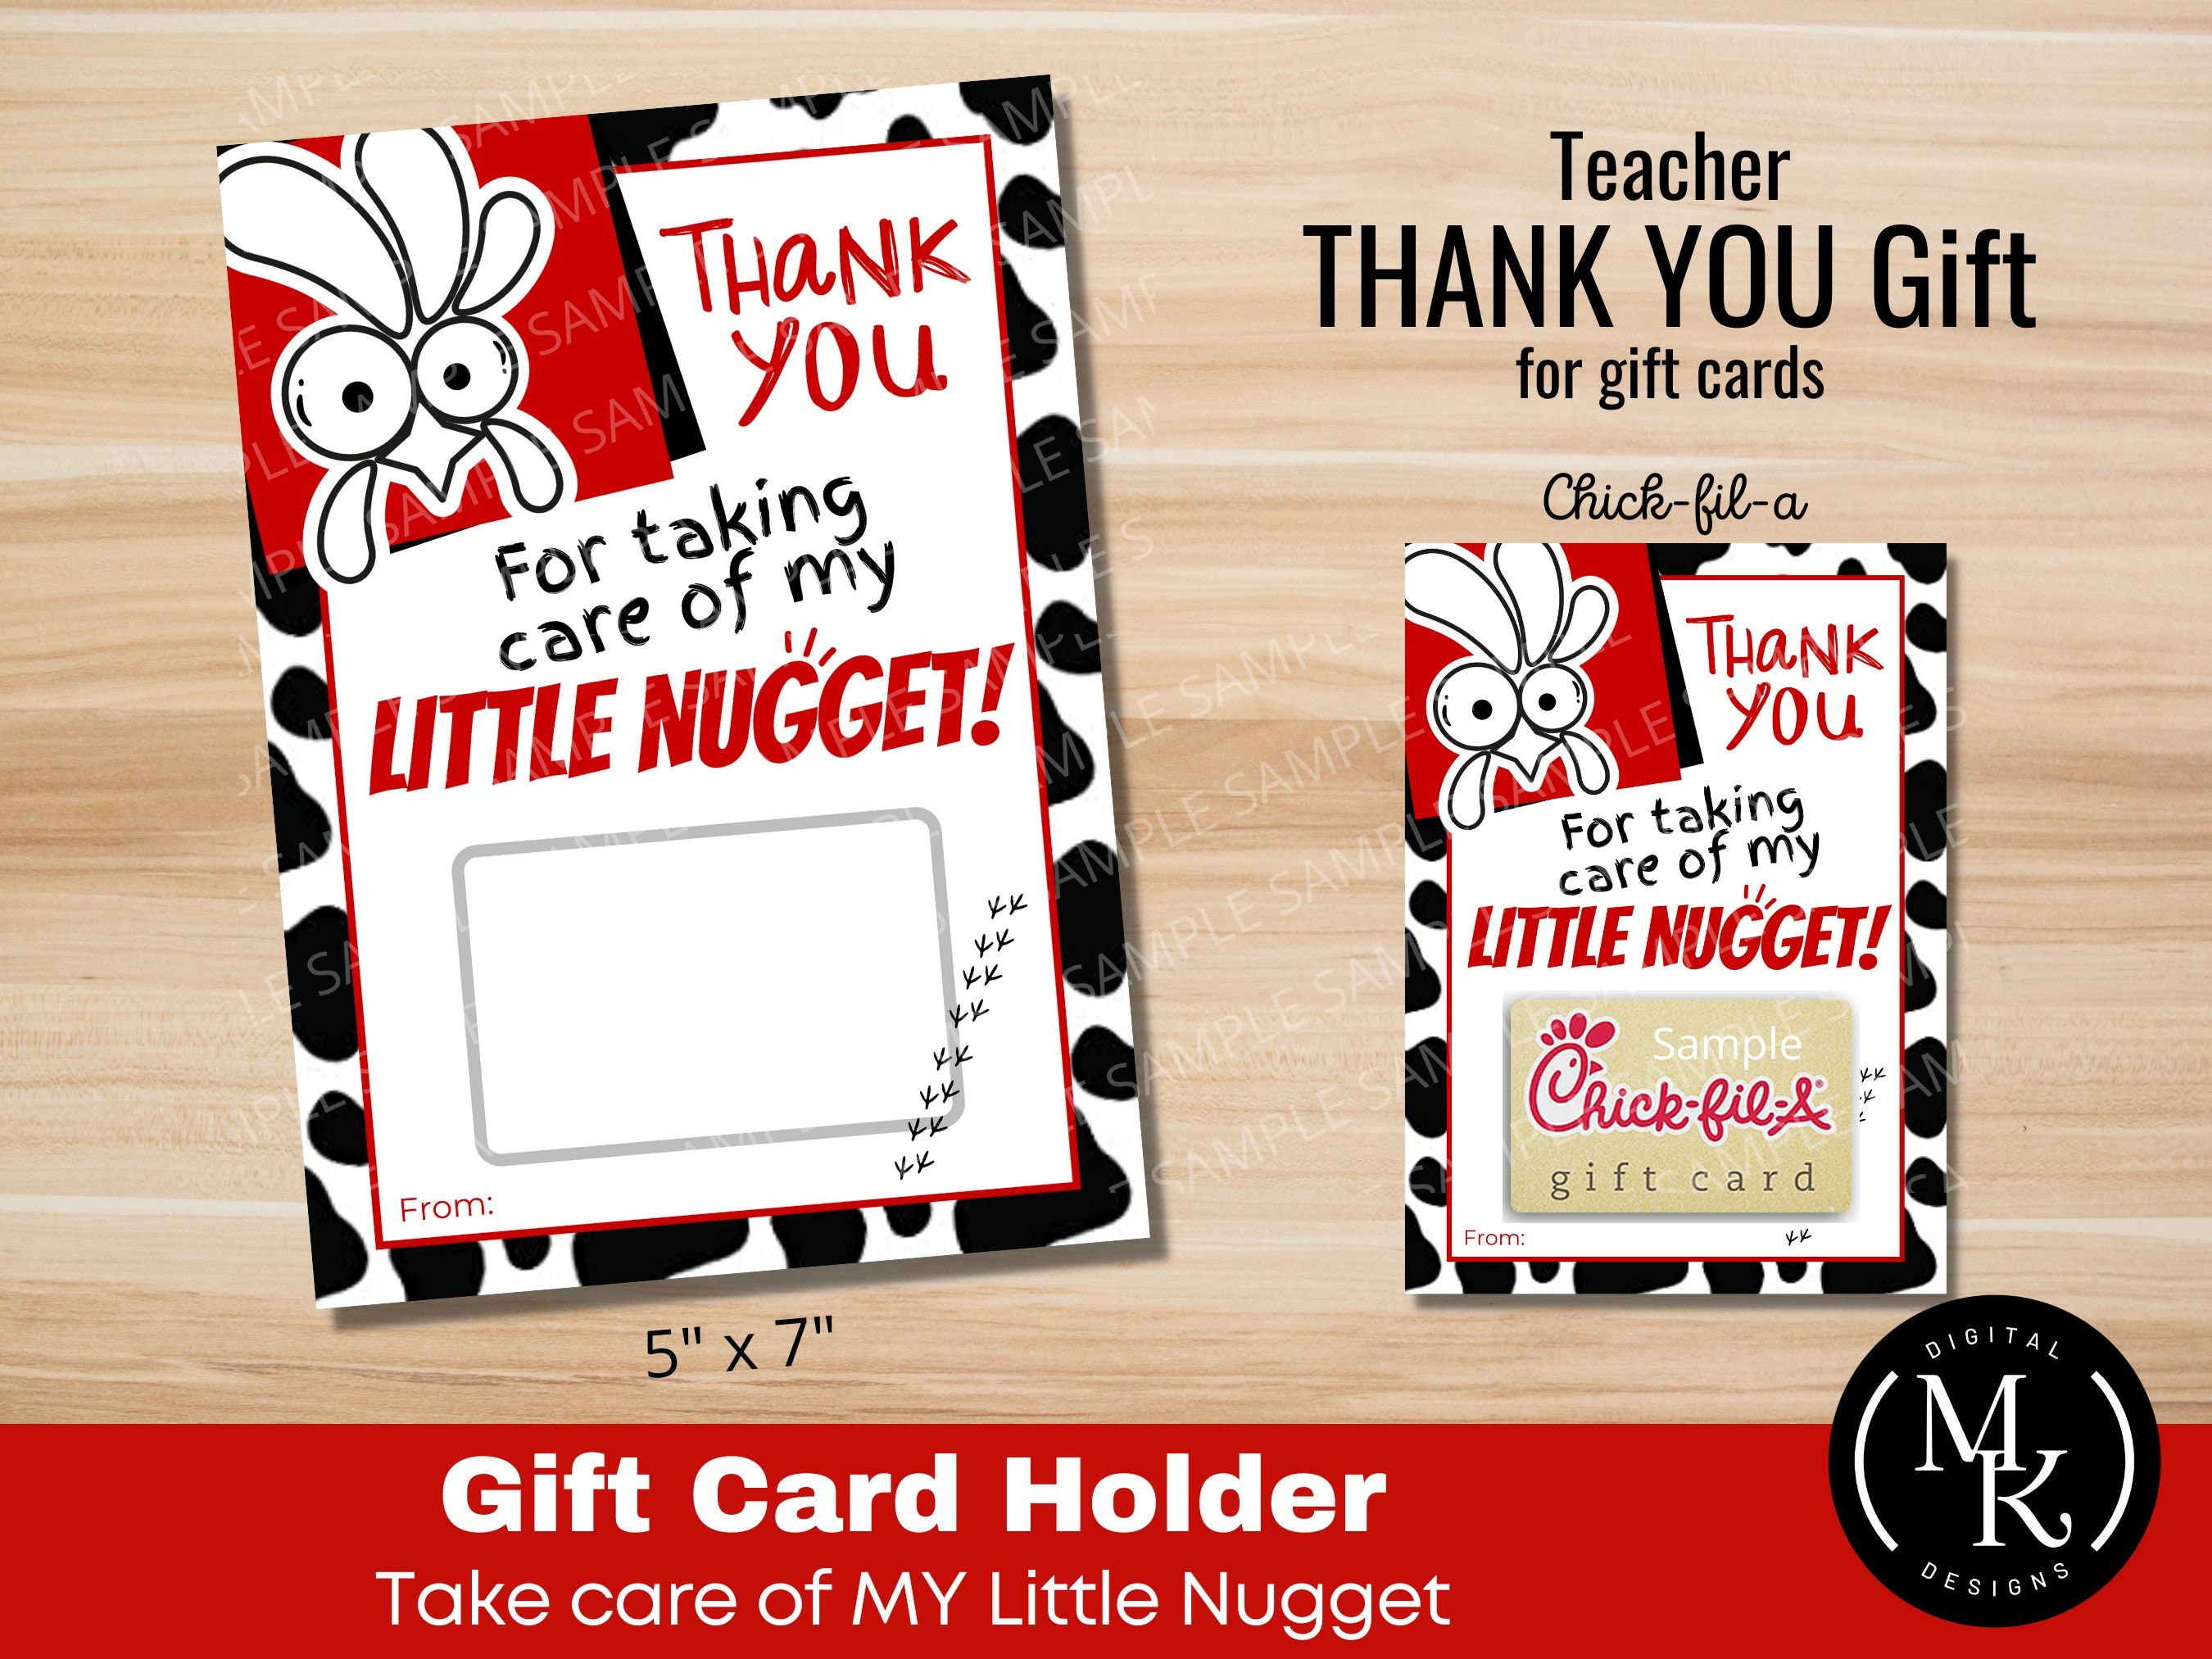 Chick-fil-a Inspired Teacher Appreciation Week Gift, Teacher Thank